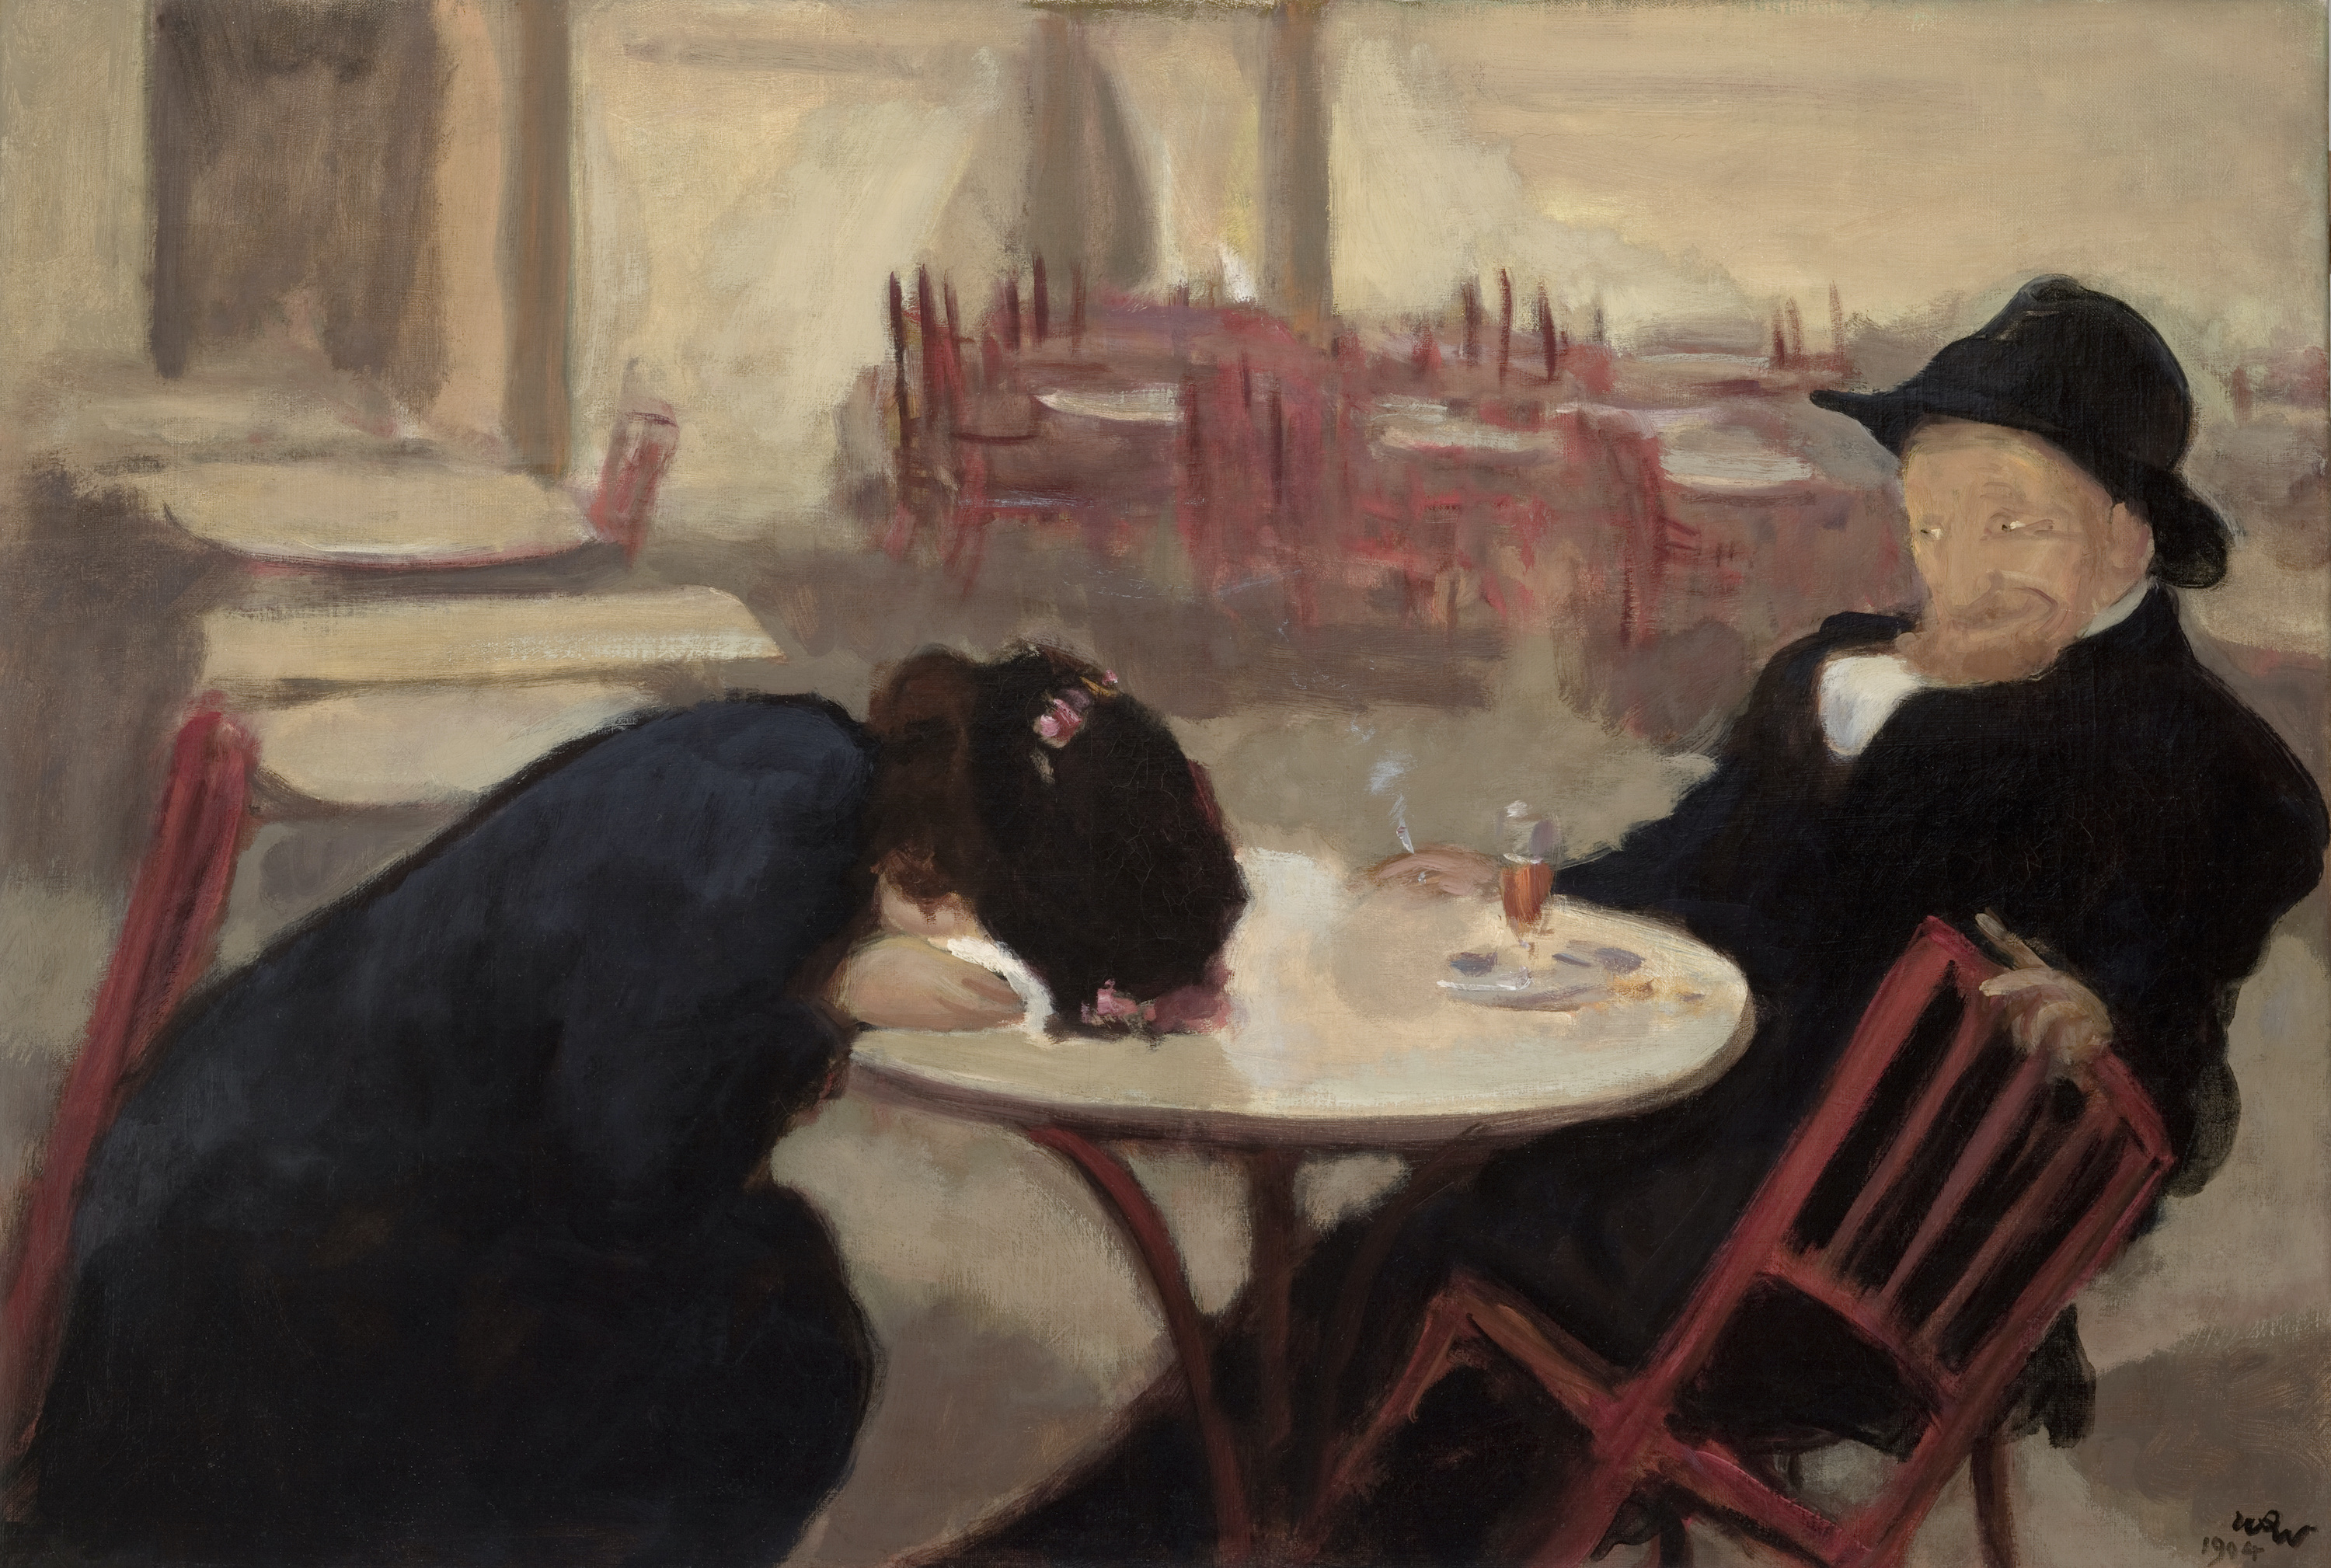 Demon (în cafenea) by Wojciech Weiss - 1904 - 65 x 95 cm 